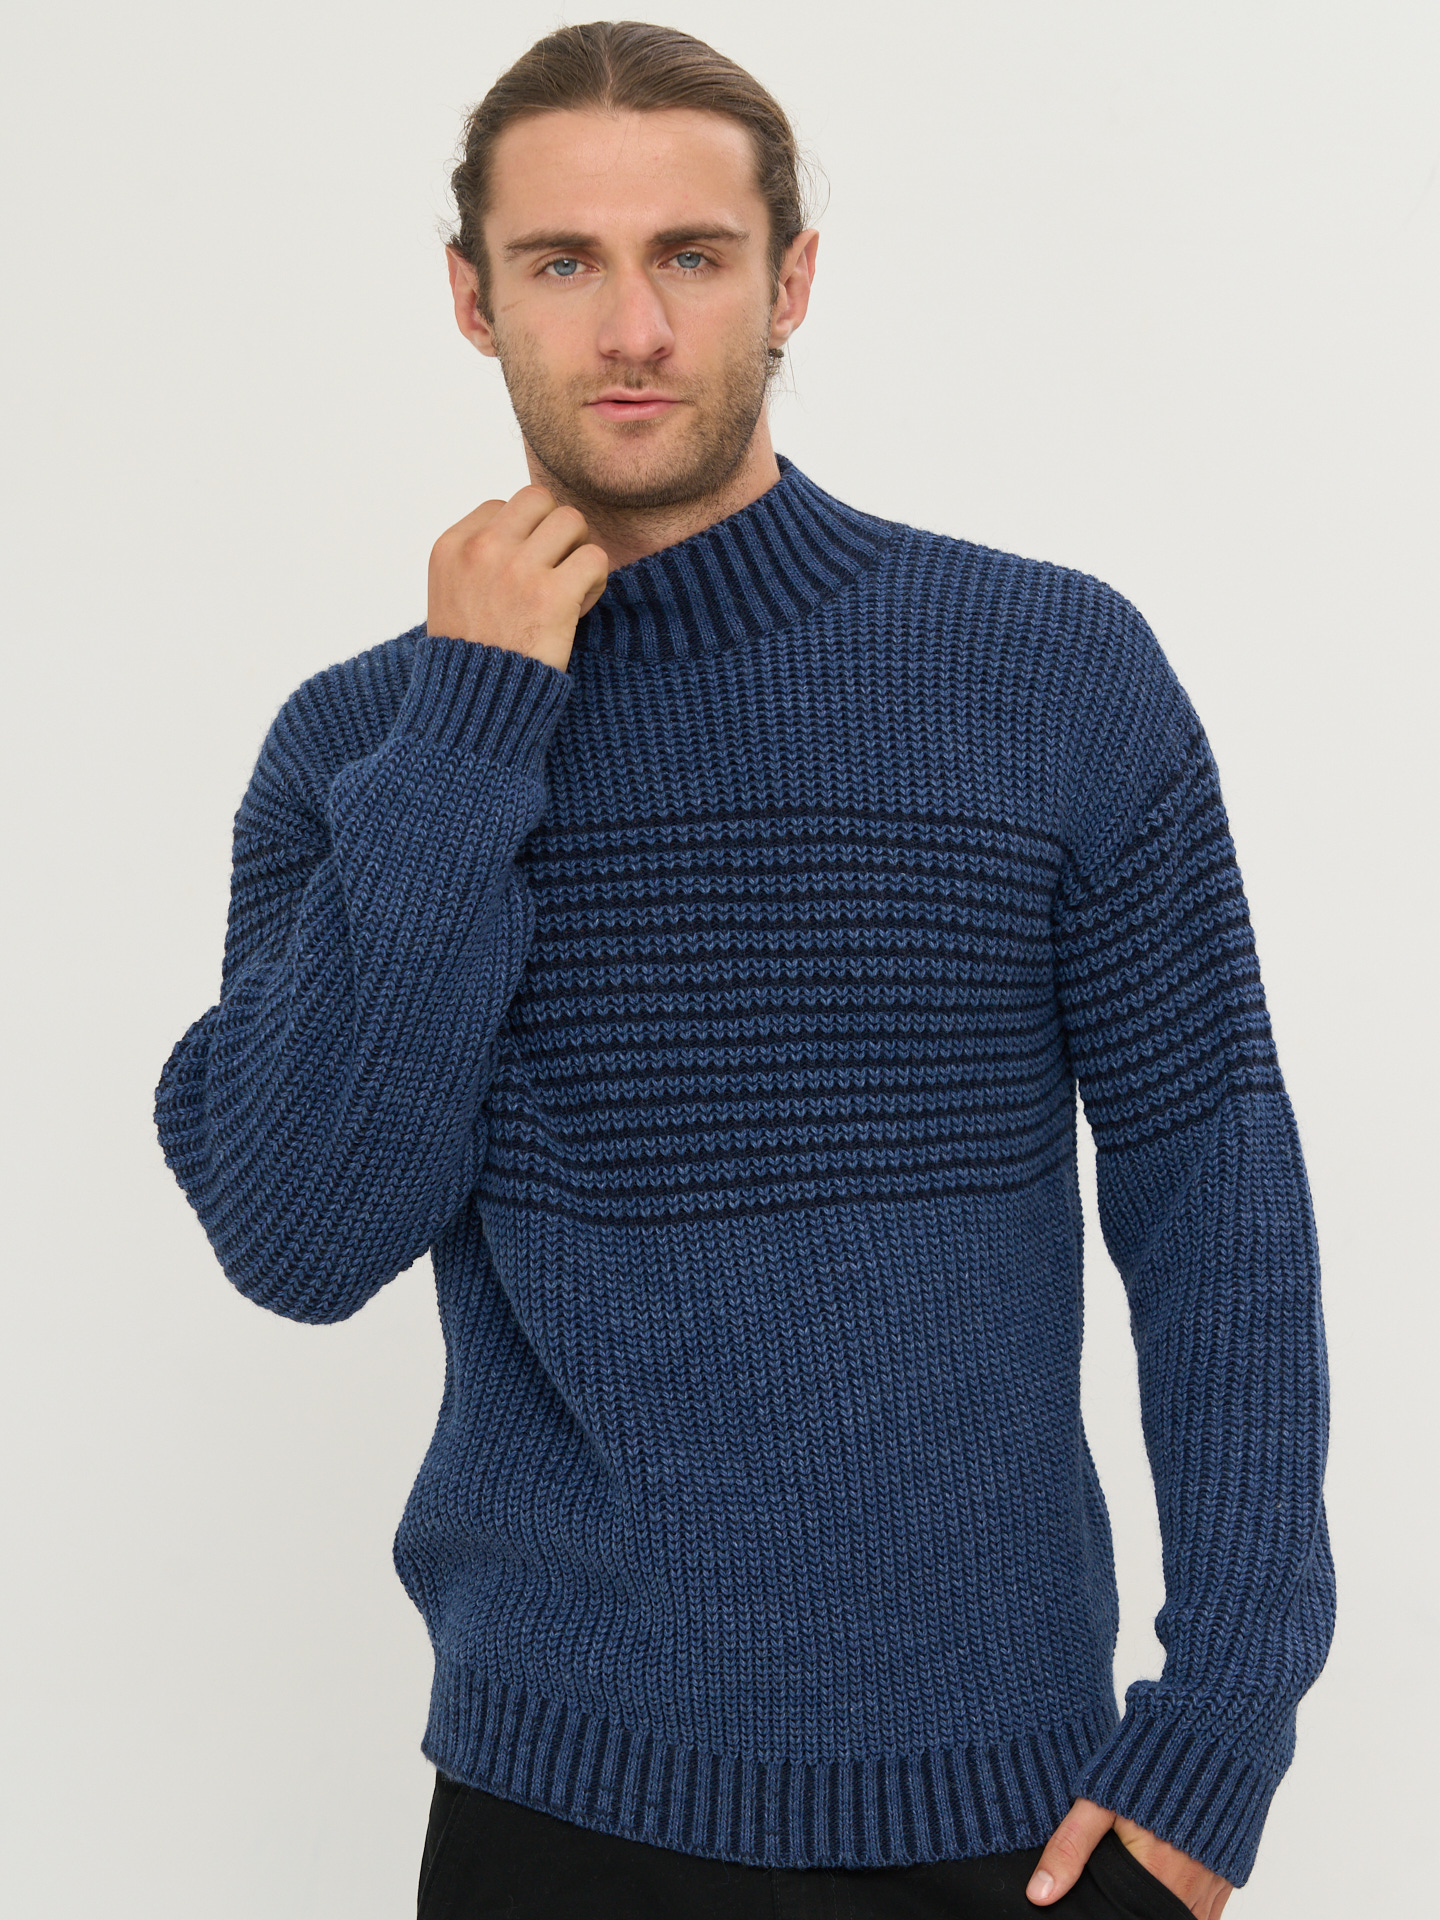 Идеальный мужской свитер для весны 2017